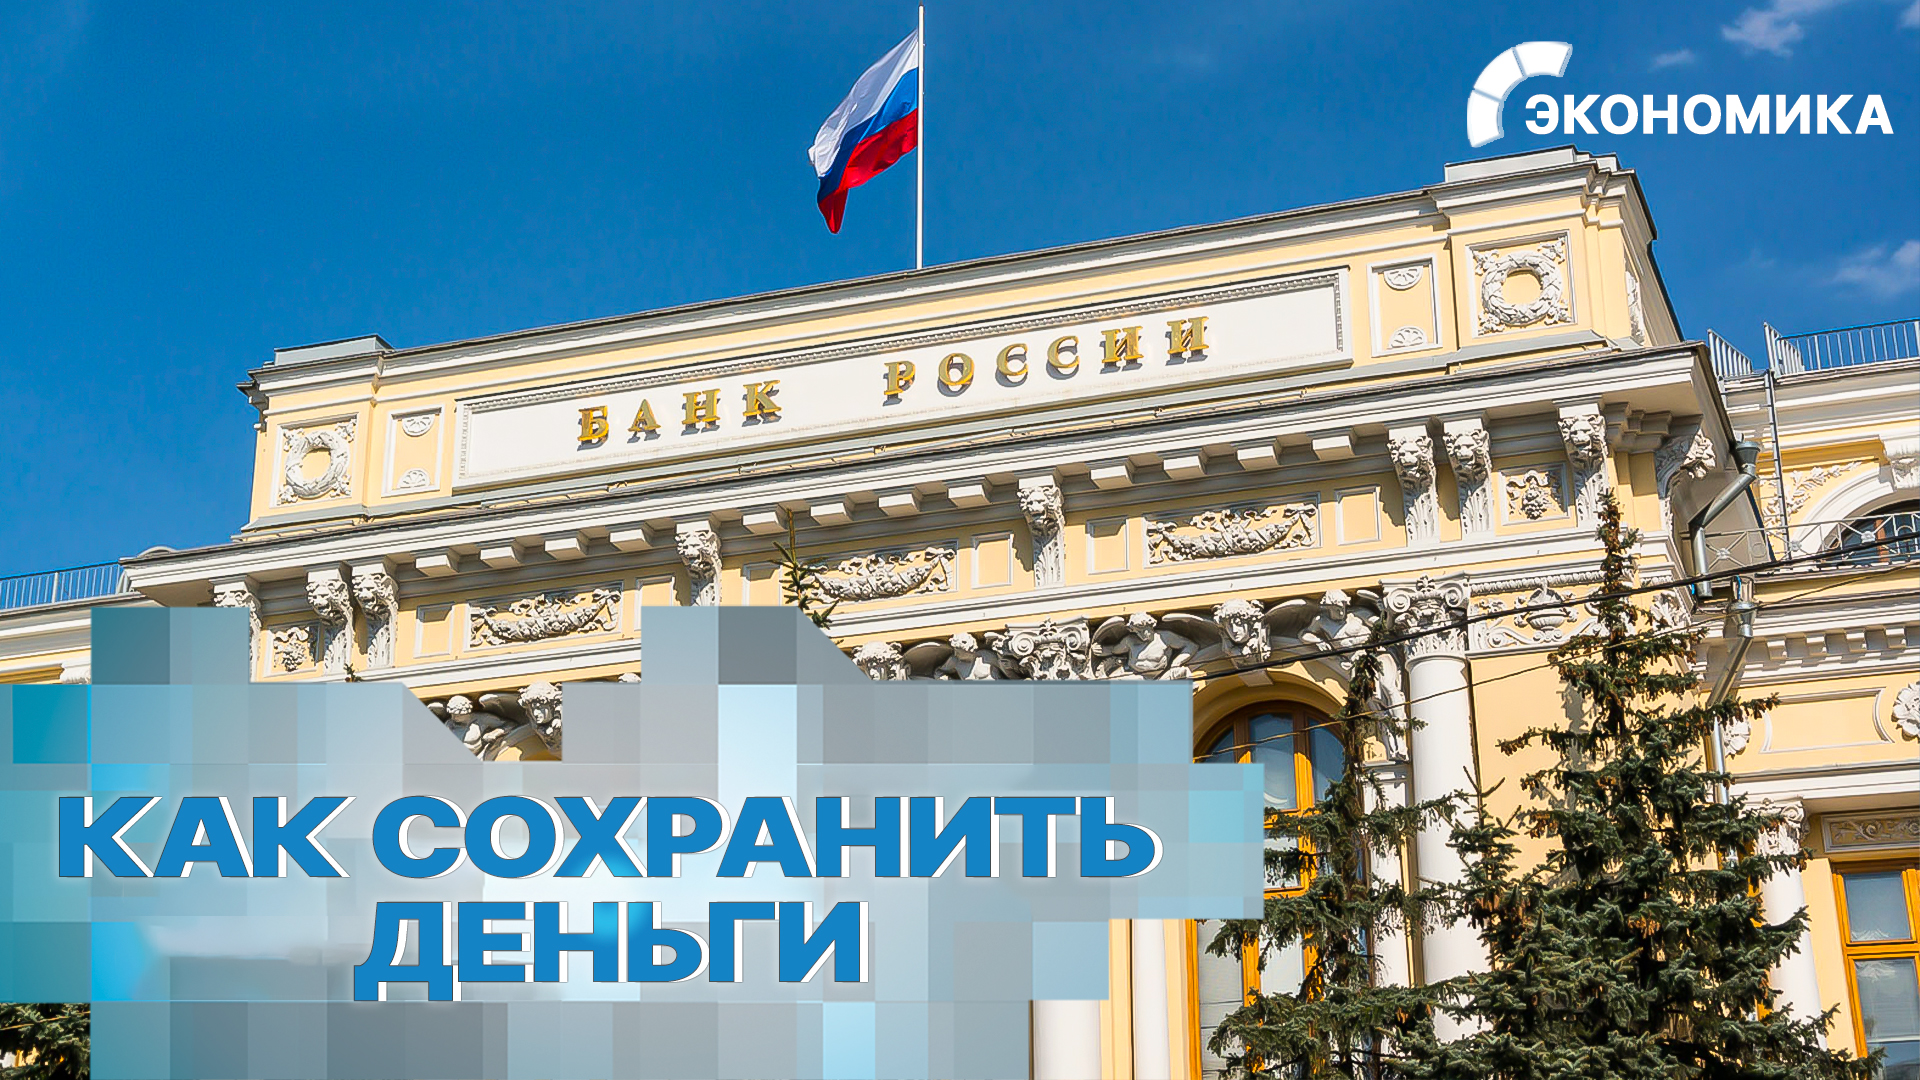 Российские банки поднимают ставки по вкладам. Как сохранить и приумножить деньги? | Вместе выгодно